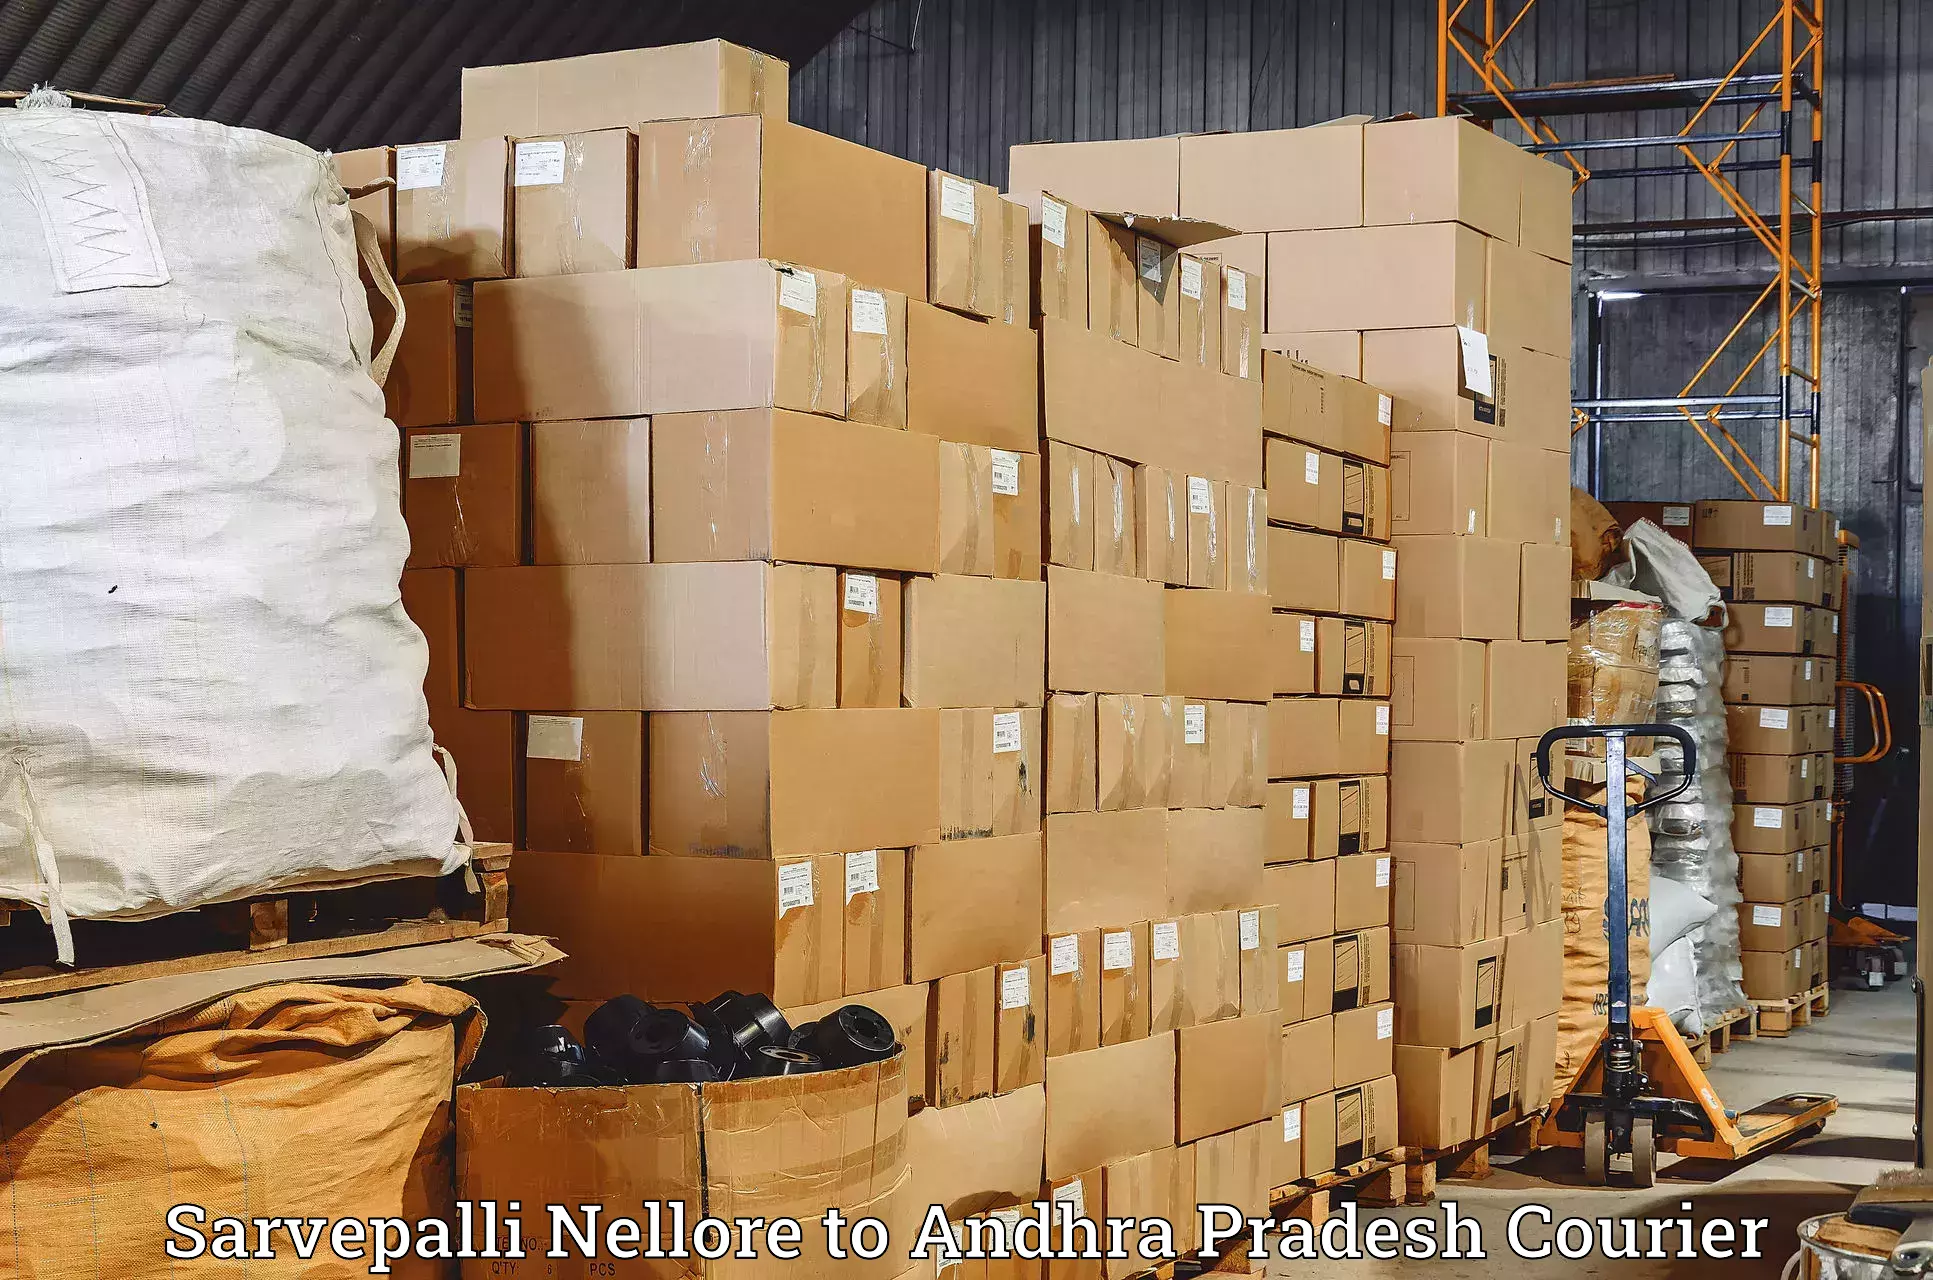 Express delivery network Sarvepalli Nellore to Tadipatri